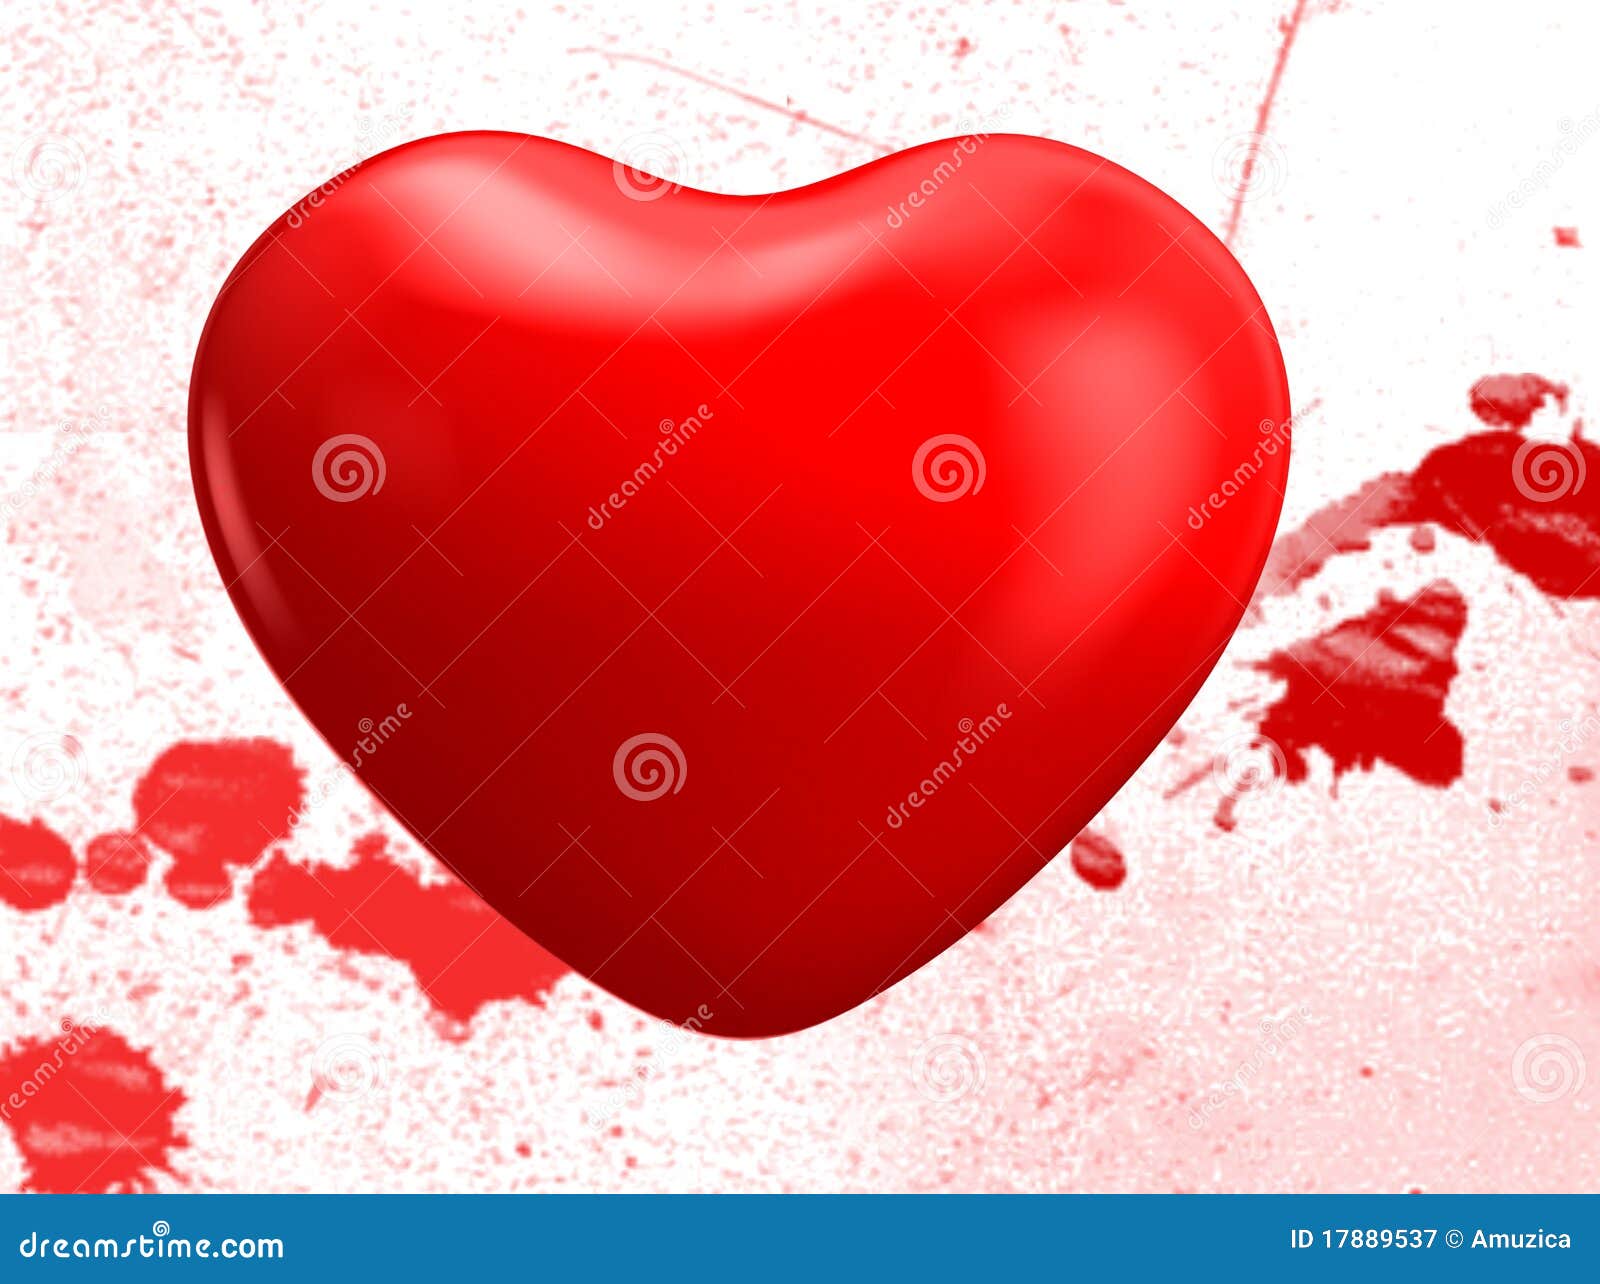 Bleeding heart. Red shiny heart. 3d render